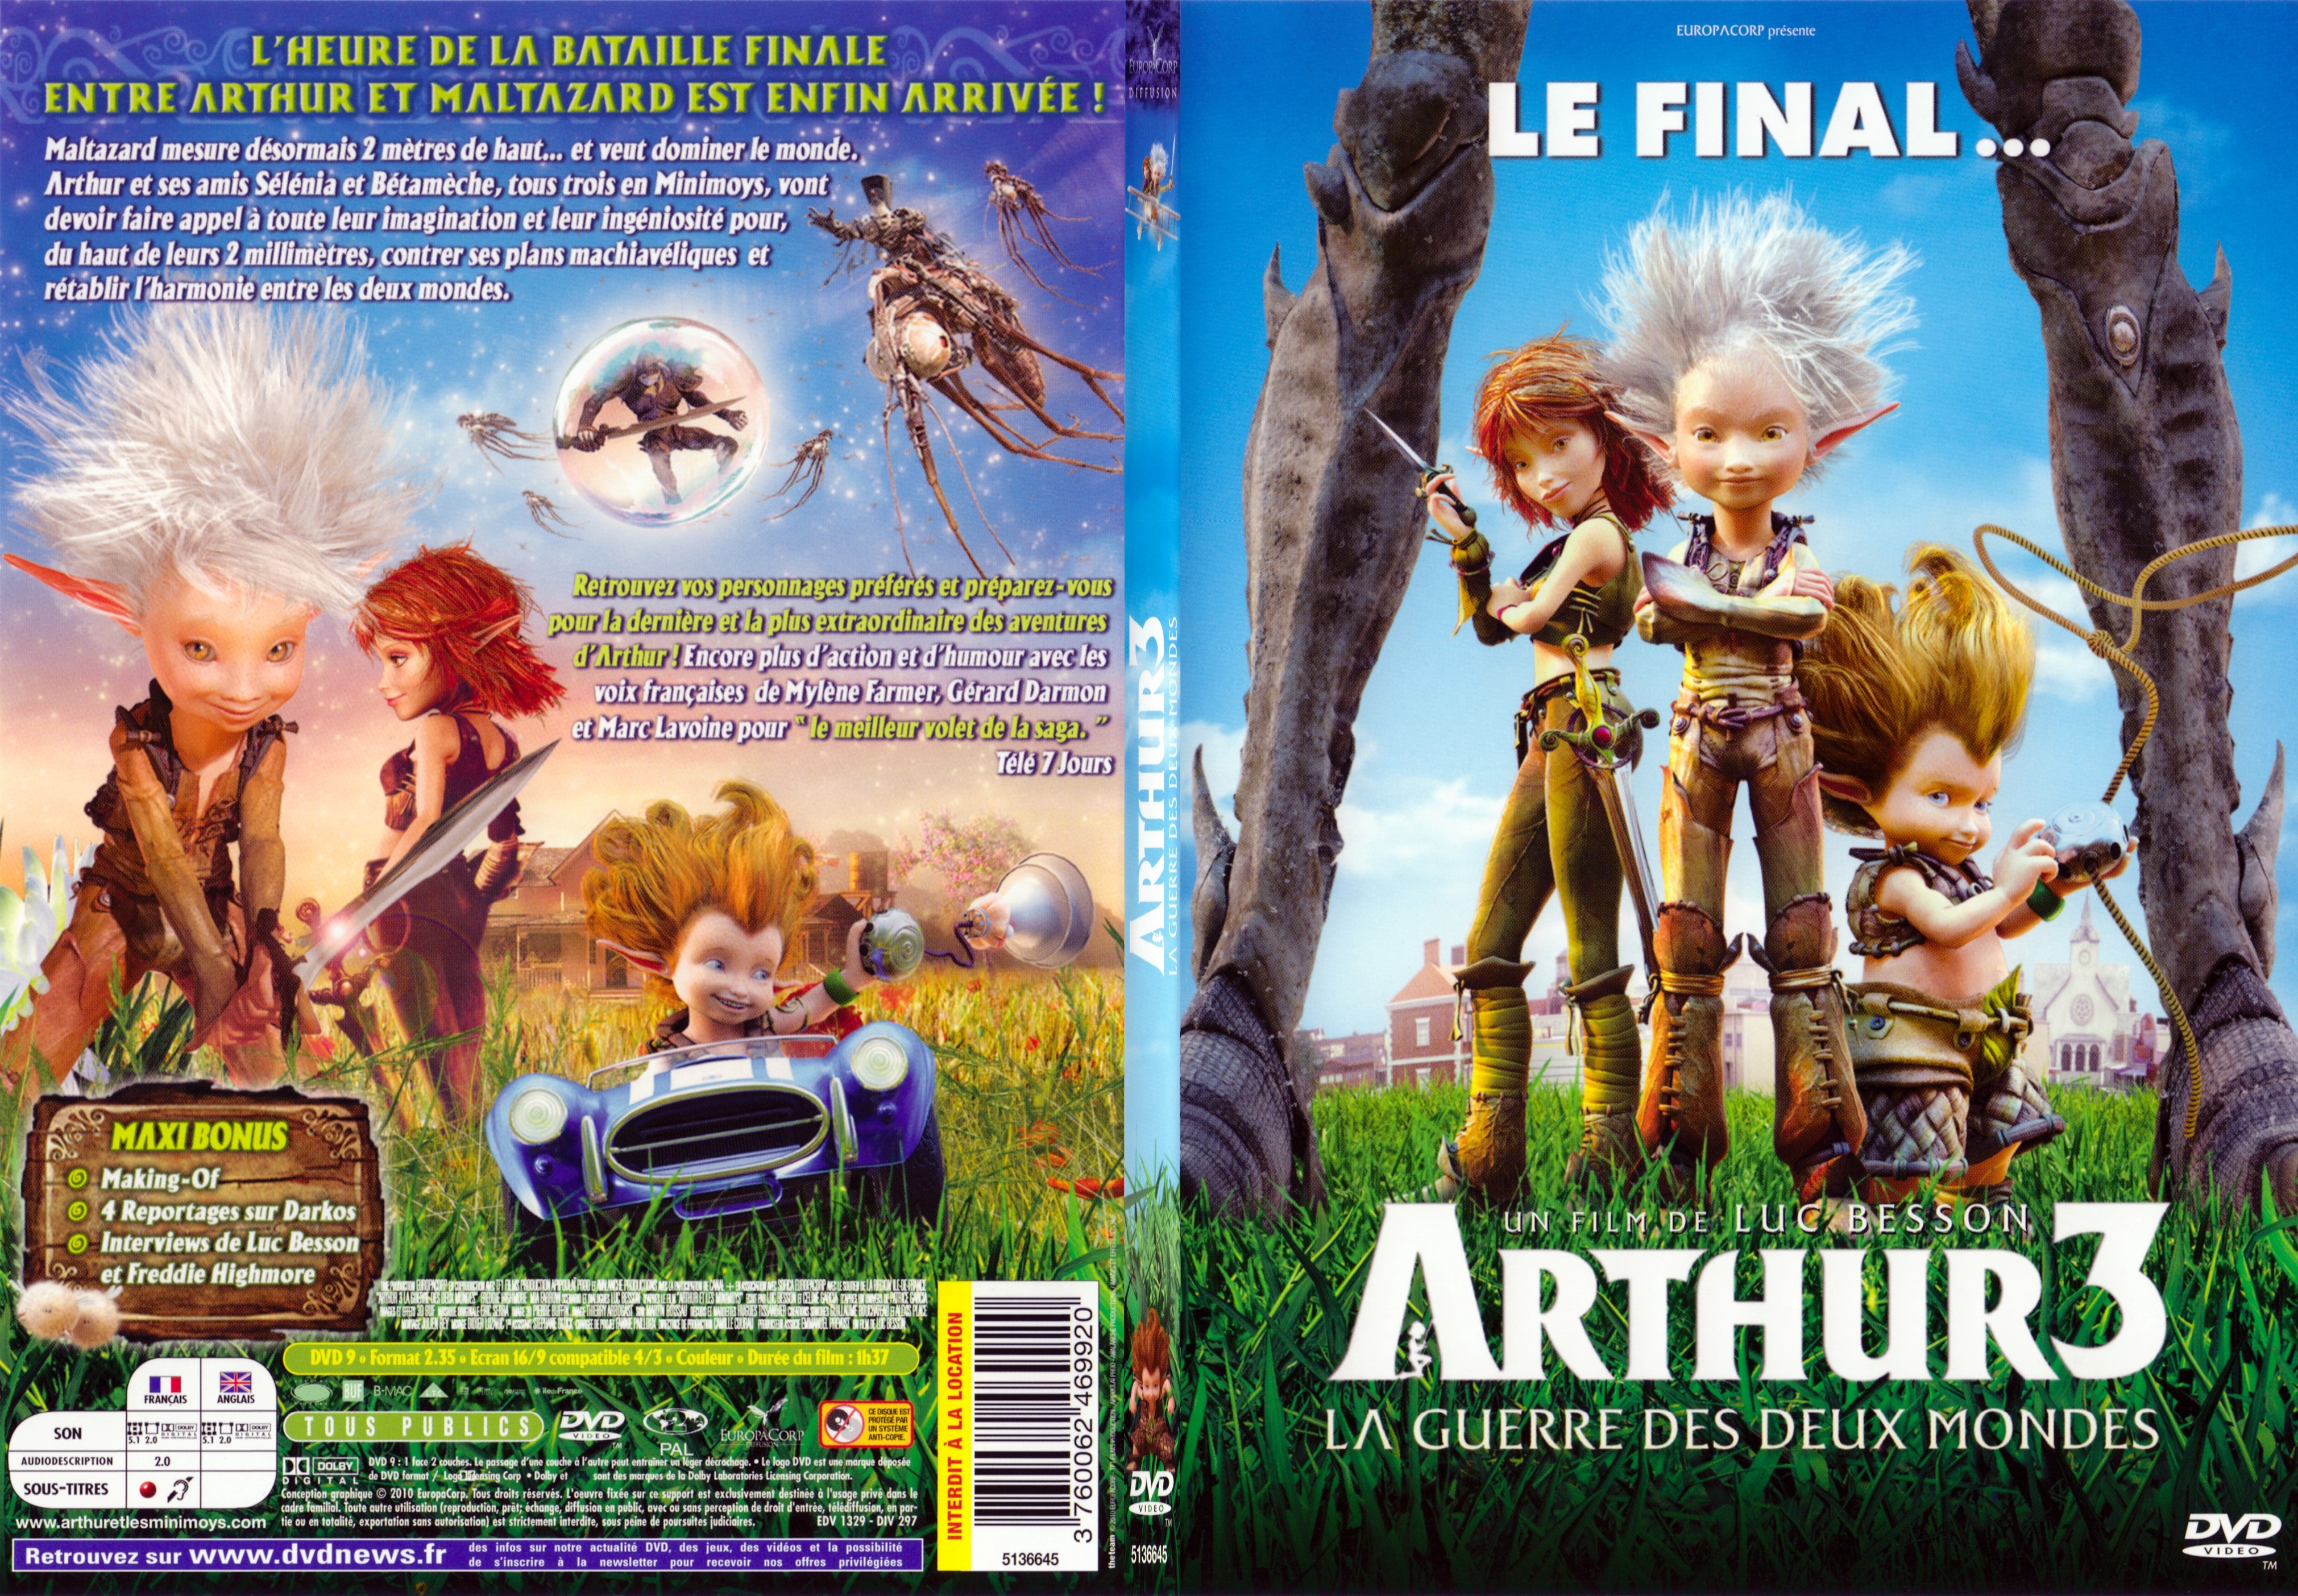 Jaquette DVD Arthur 3 la guerre des deux mondes - SLIM